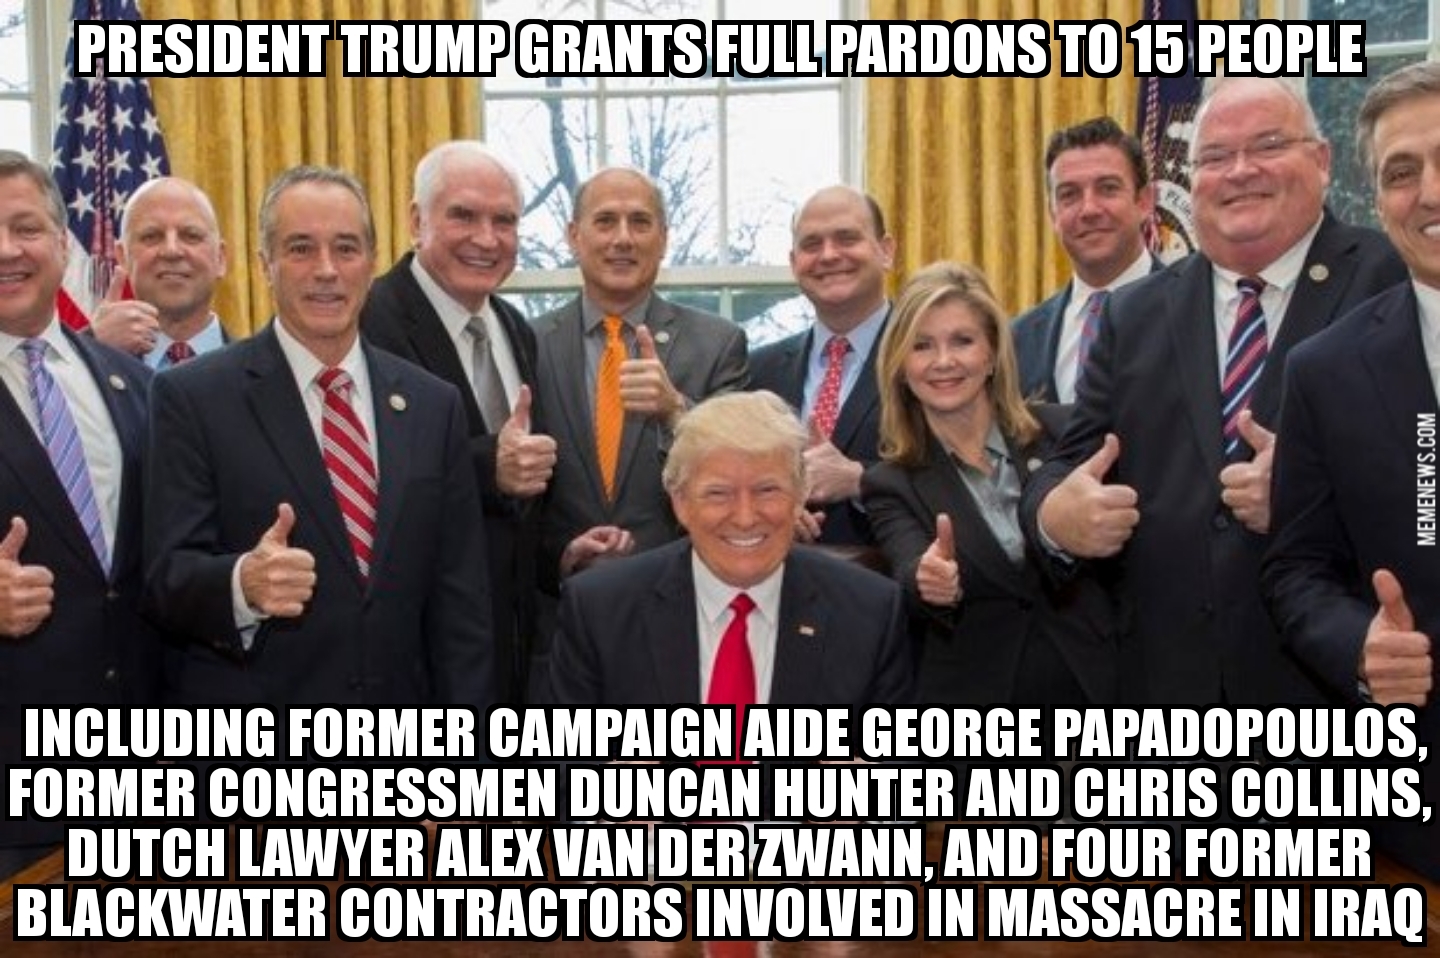 Trump pardons 15